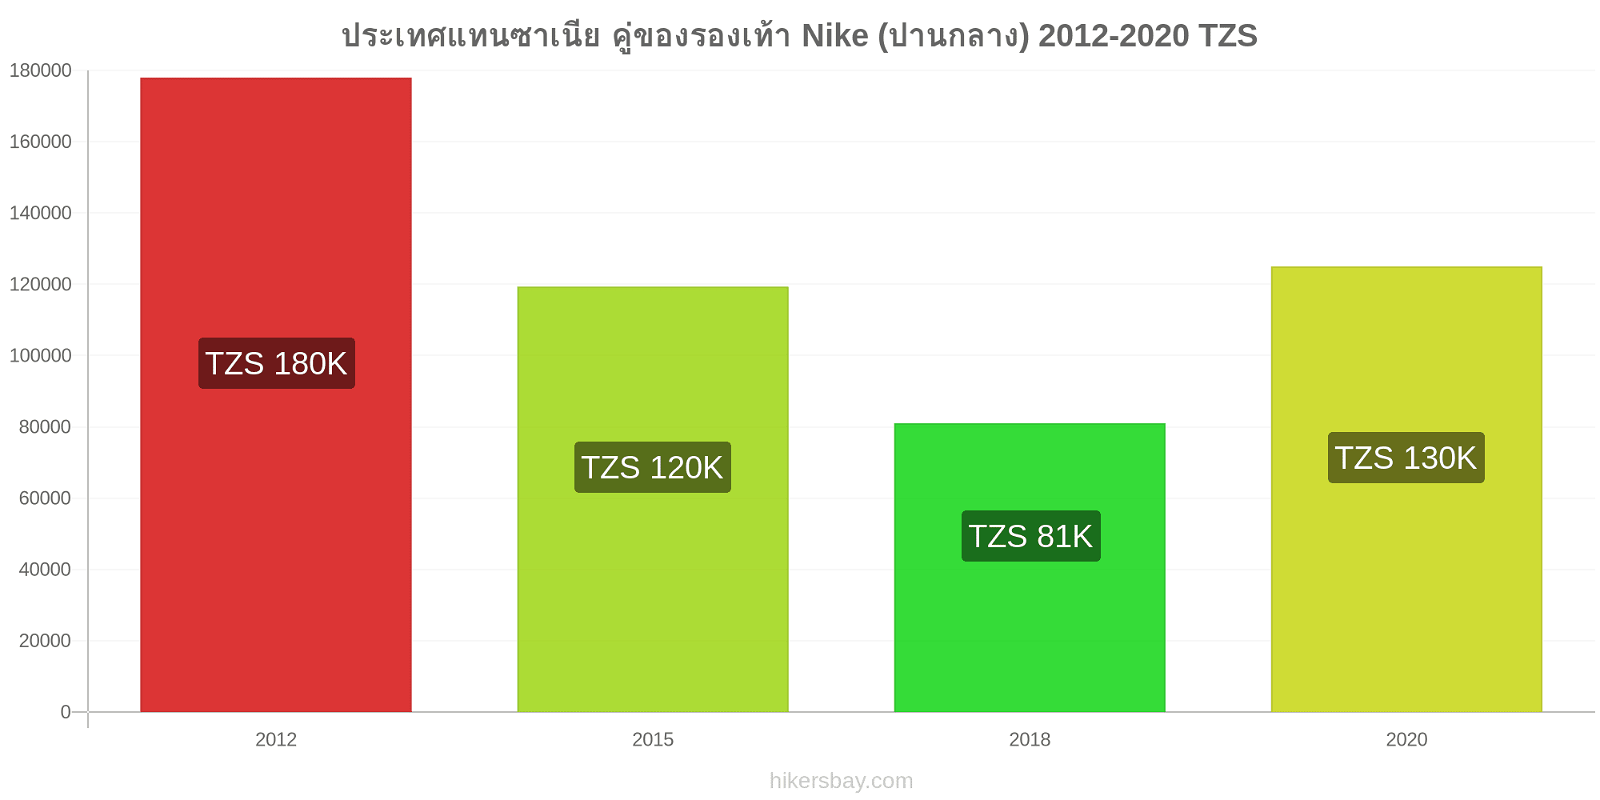 ประเทศแทนซาเนีย การเปลี่ยนแปลงราคา คู่ของรองเท้า Nike (ปานกลาง) hikersbay.com